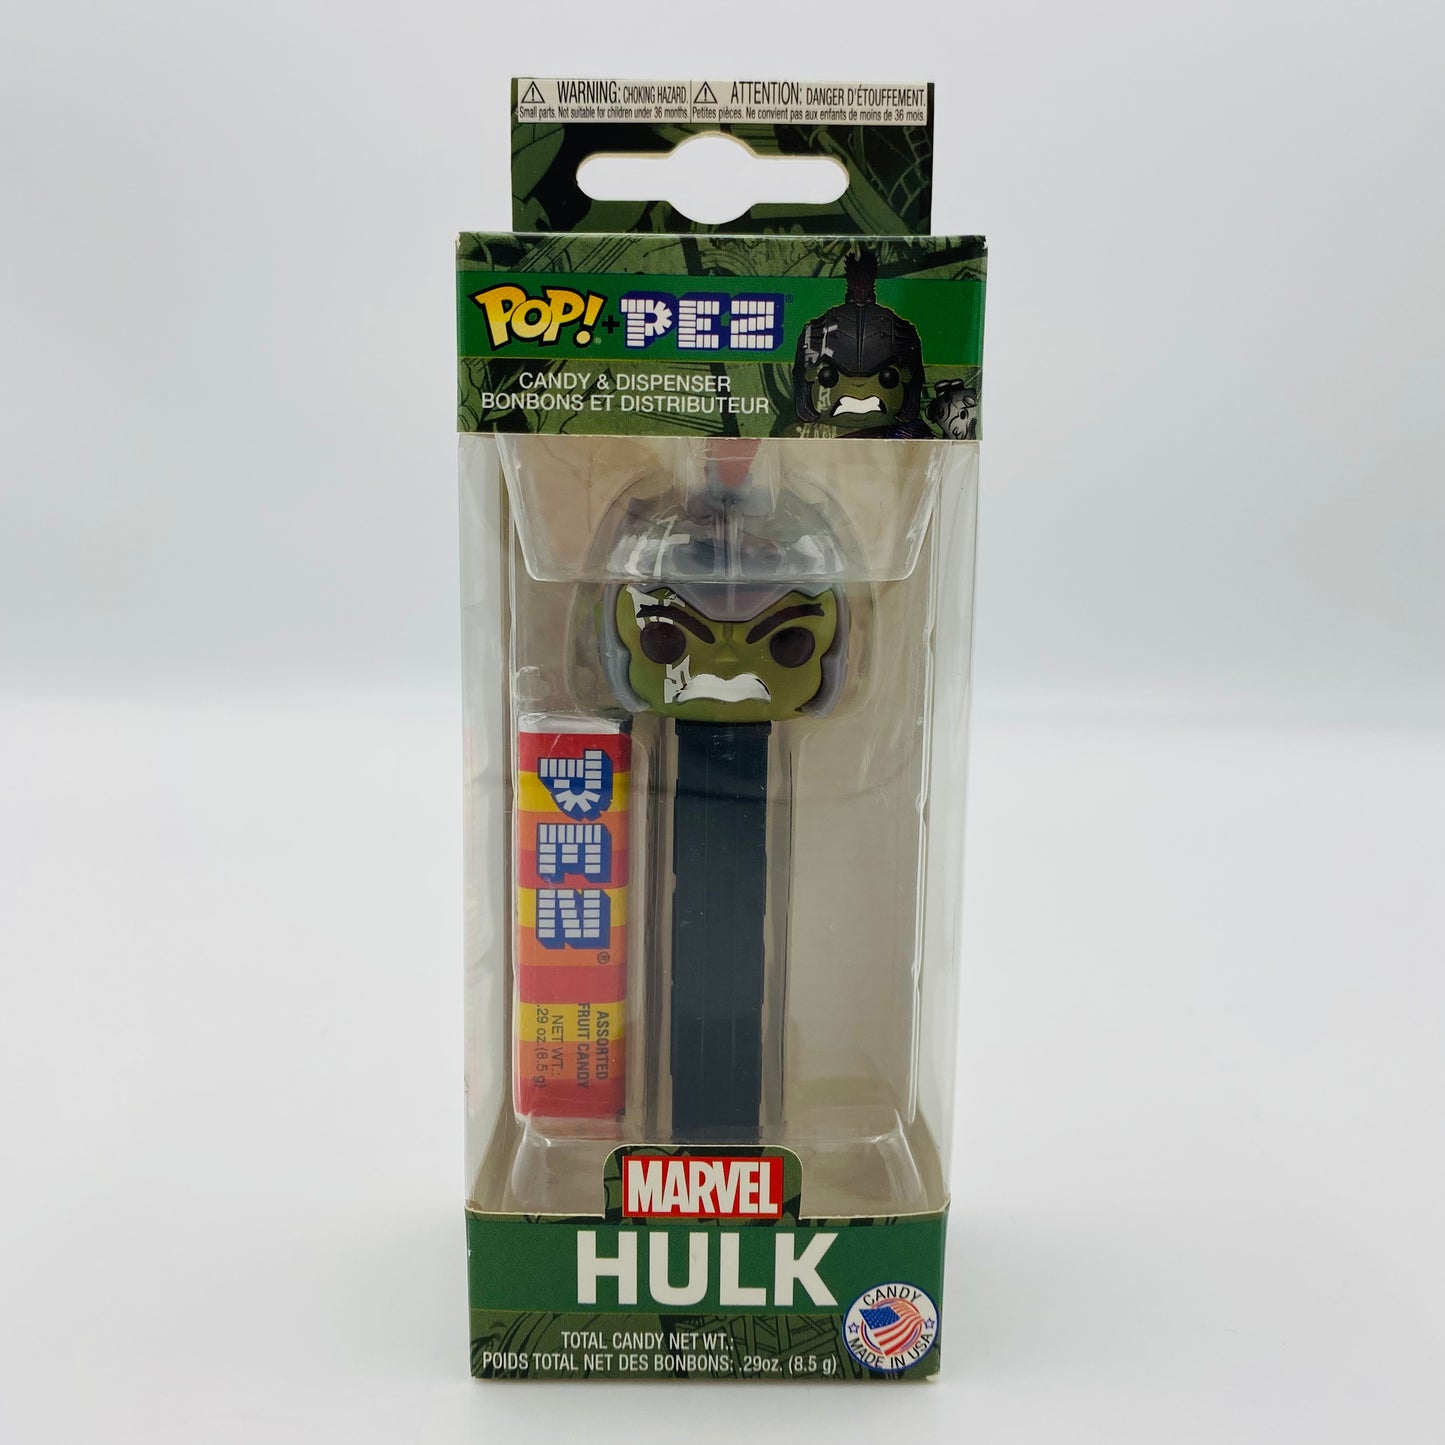 Marvel Hulk Pop! + PEZ dispenser (2018) boxed